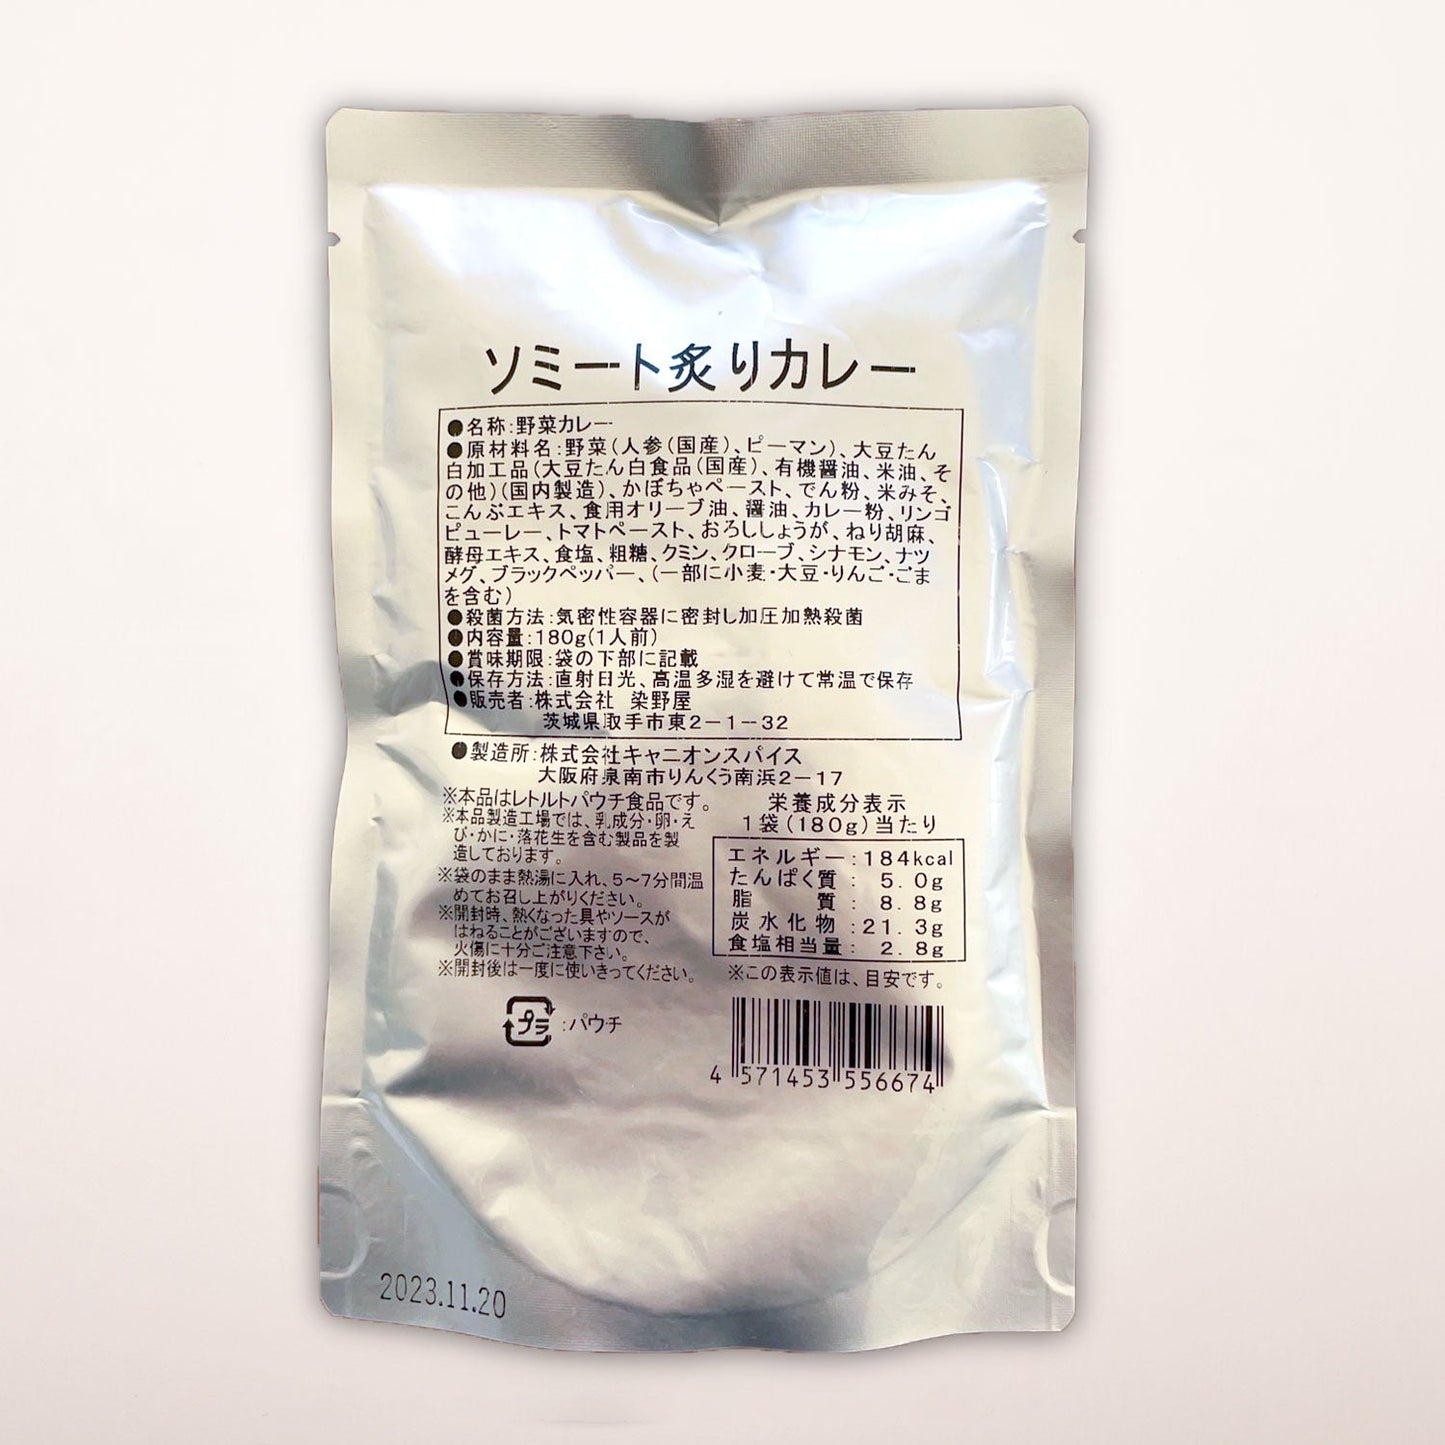 
                  
                    ソミート炙りカレー 10パック 【送料無料】
                  
                